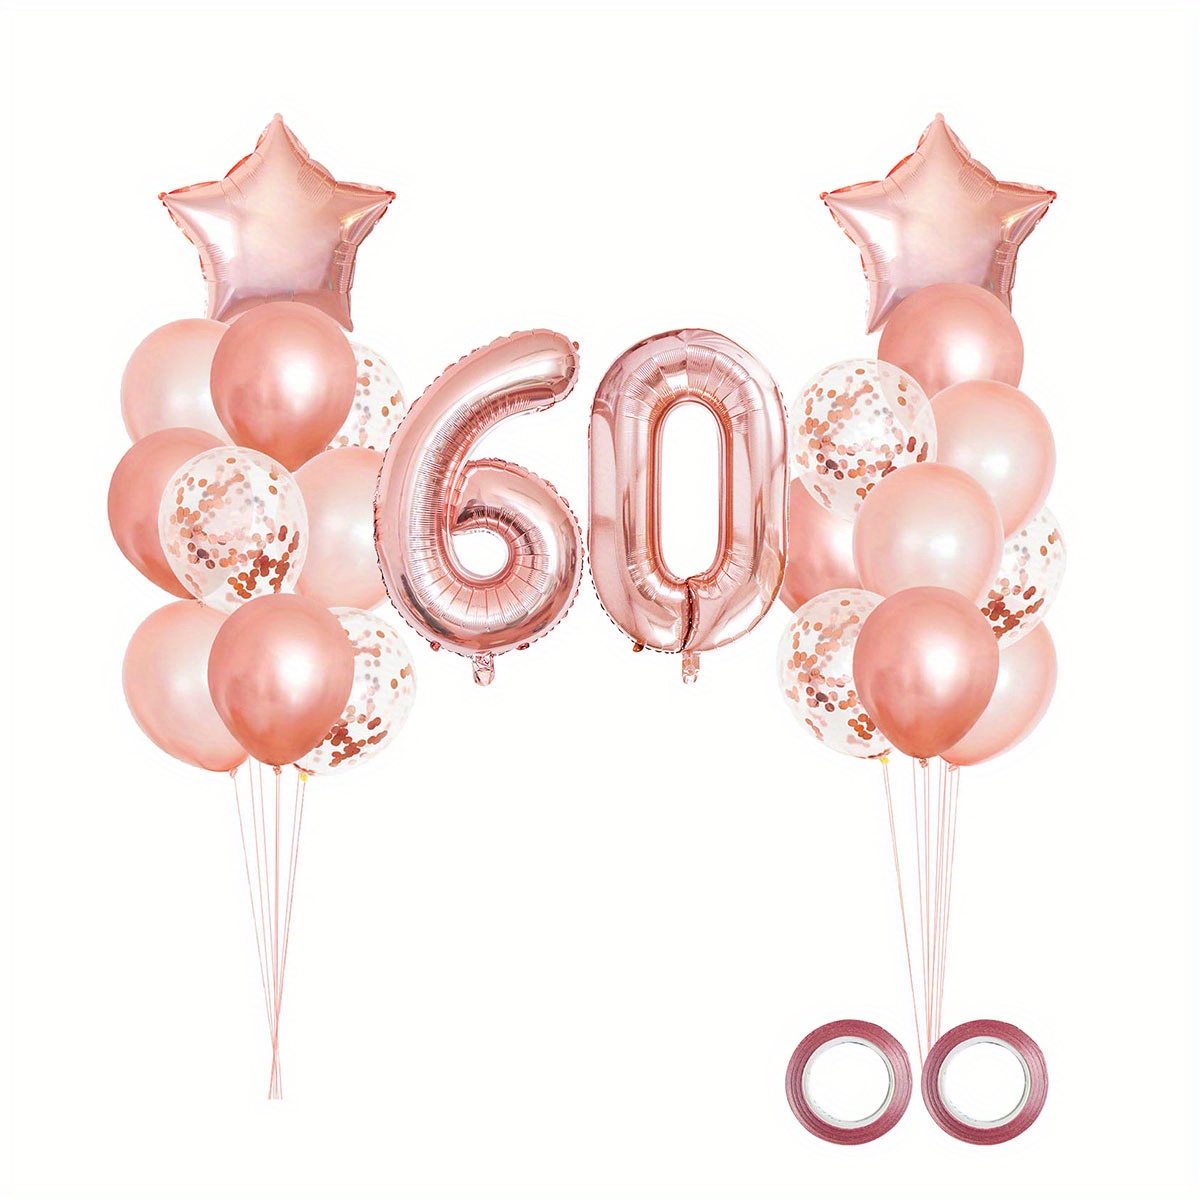 Globo de 60 cumpleaños, globo de Mylar de oro rosa con el número 60,  divertida corona de cumpleaños 60/aniversario de boda, decoración de globos  de